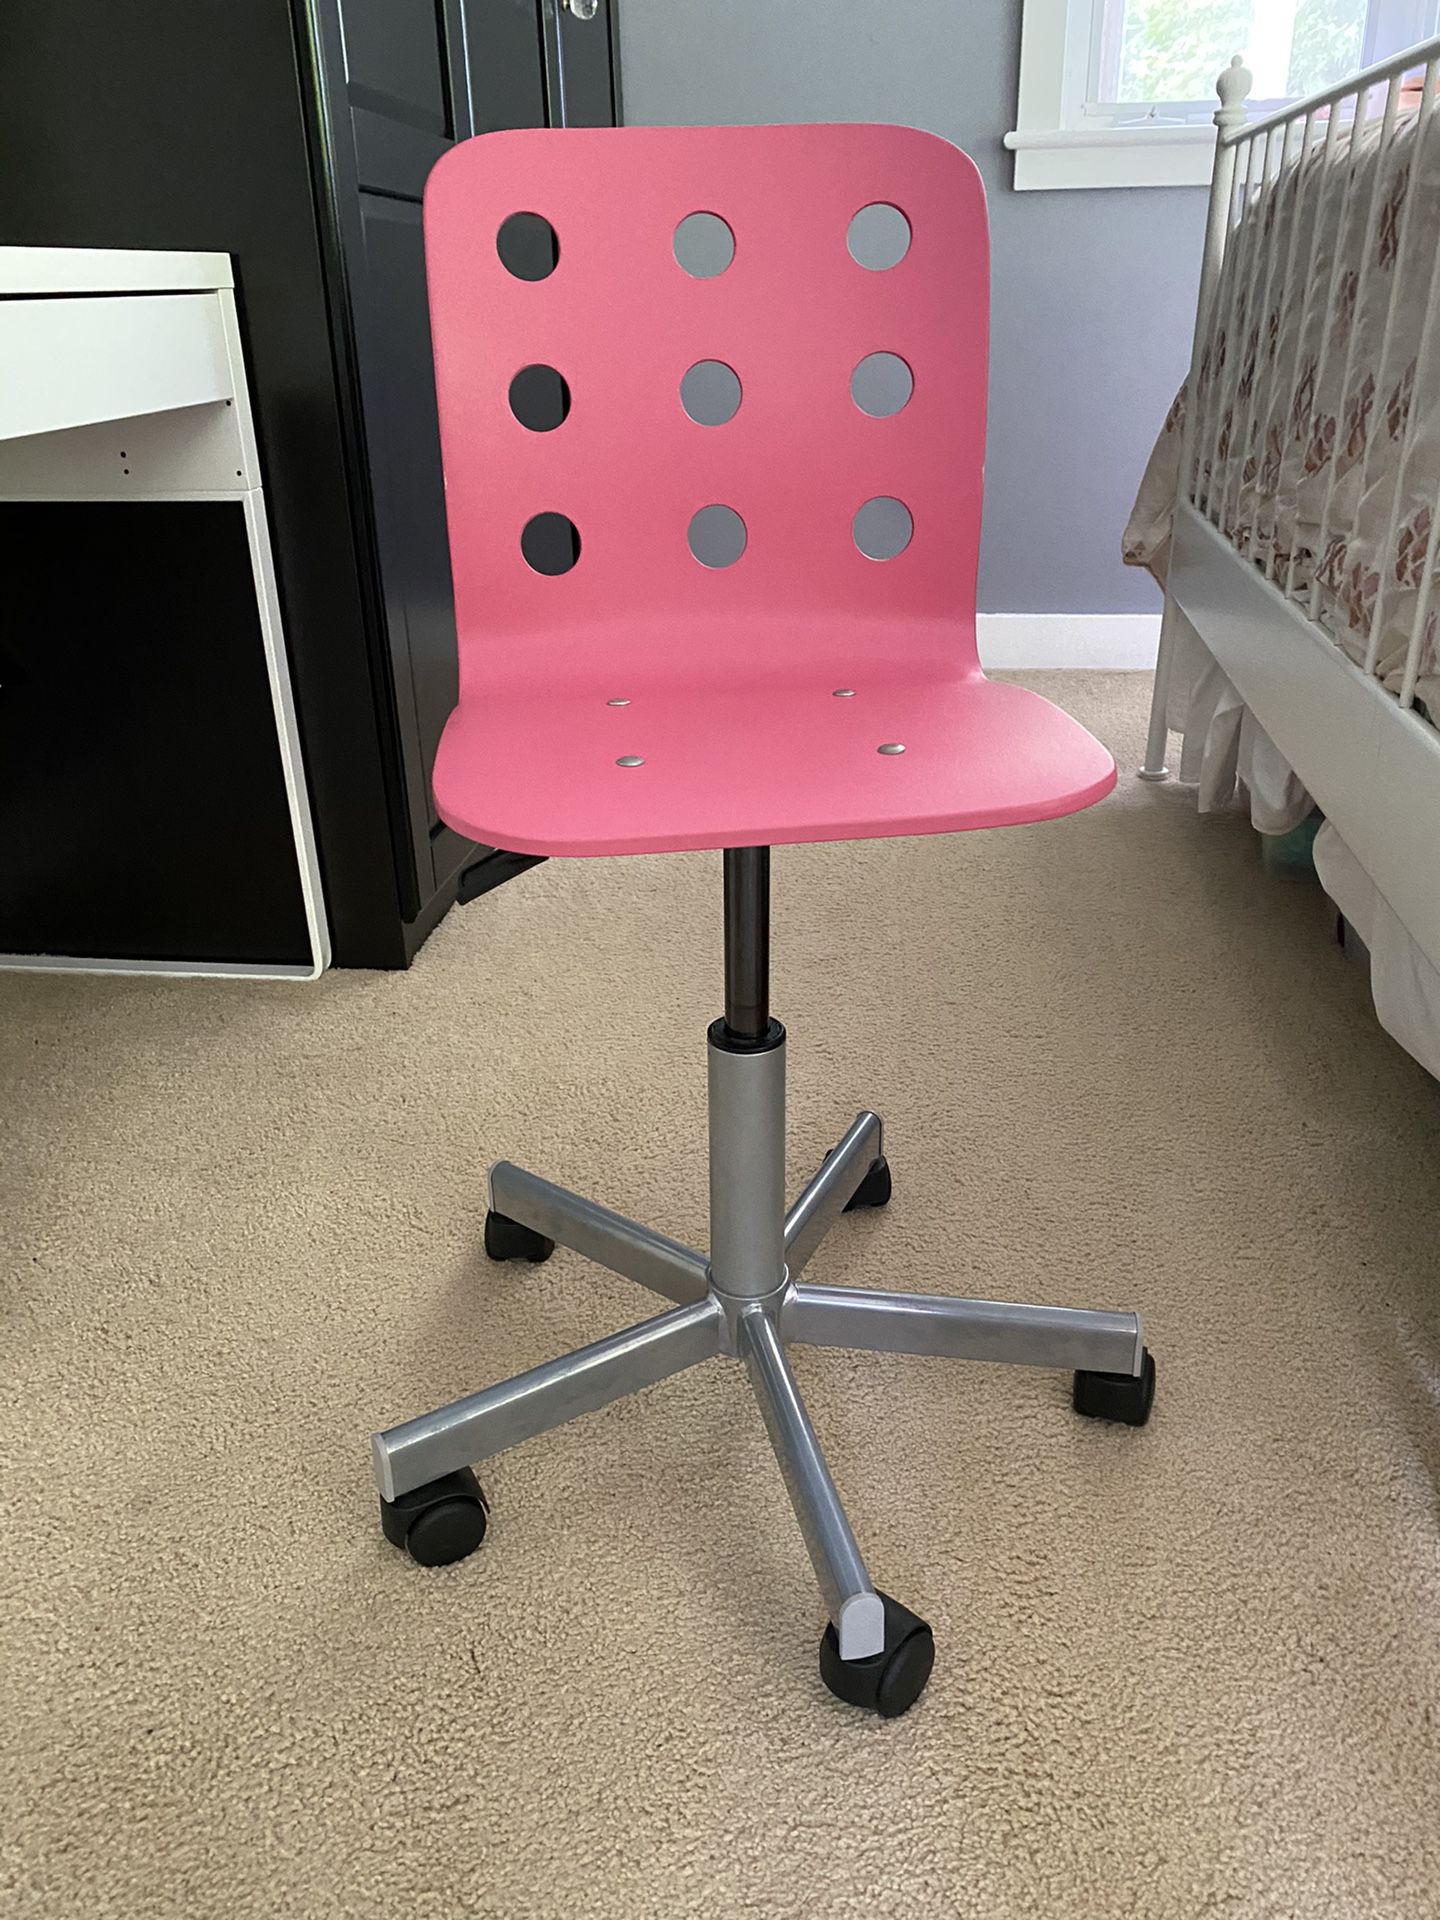 Pink IKEA JULES desk chair